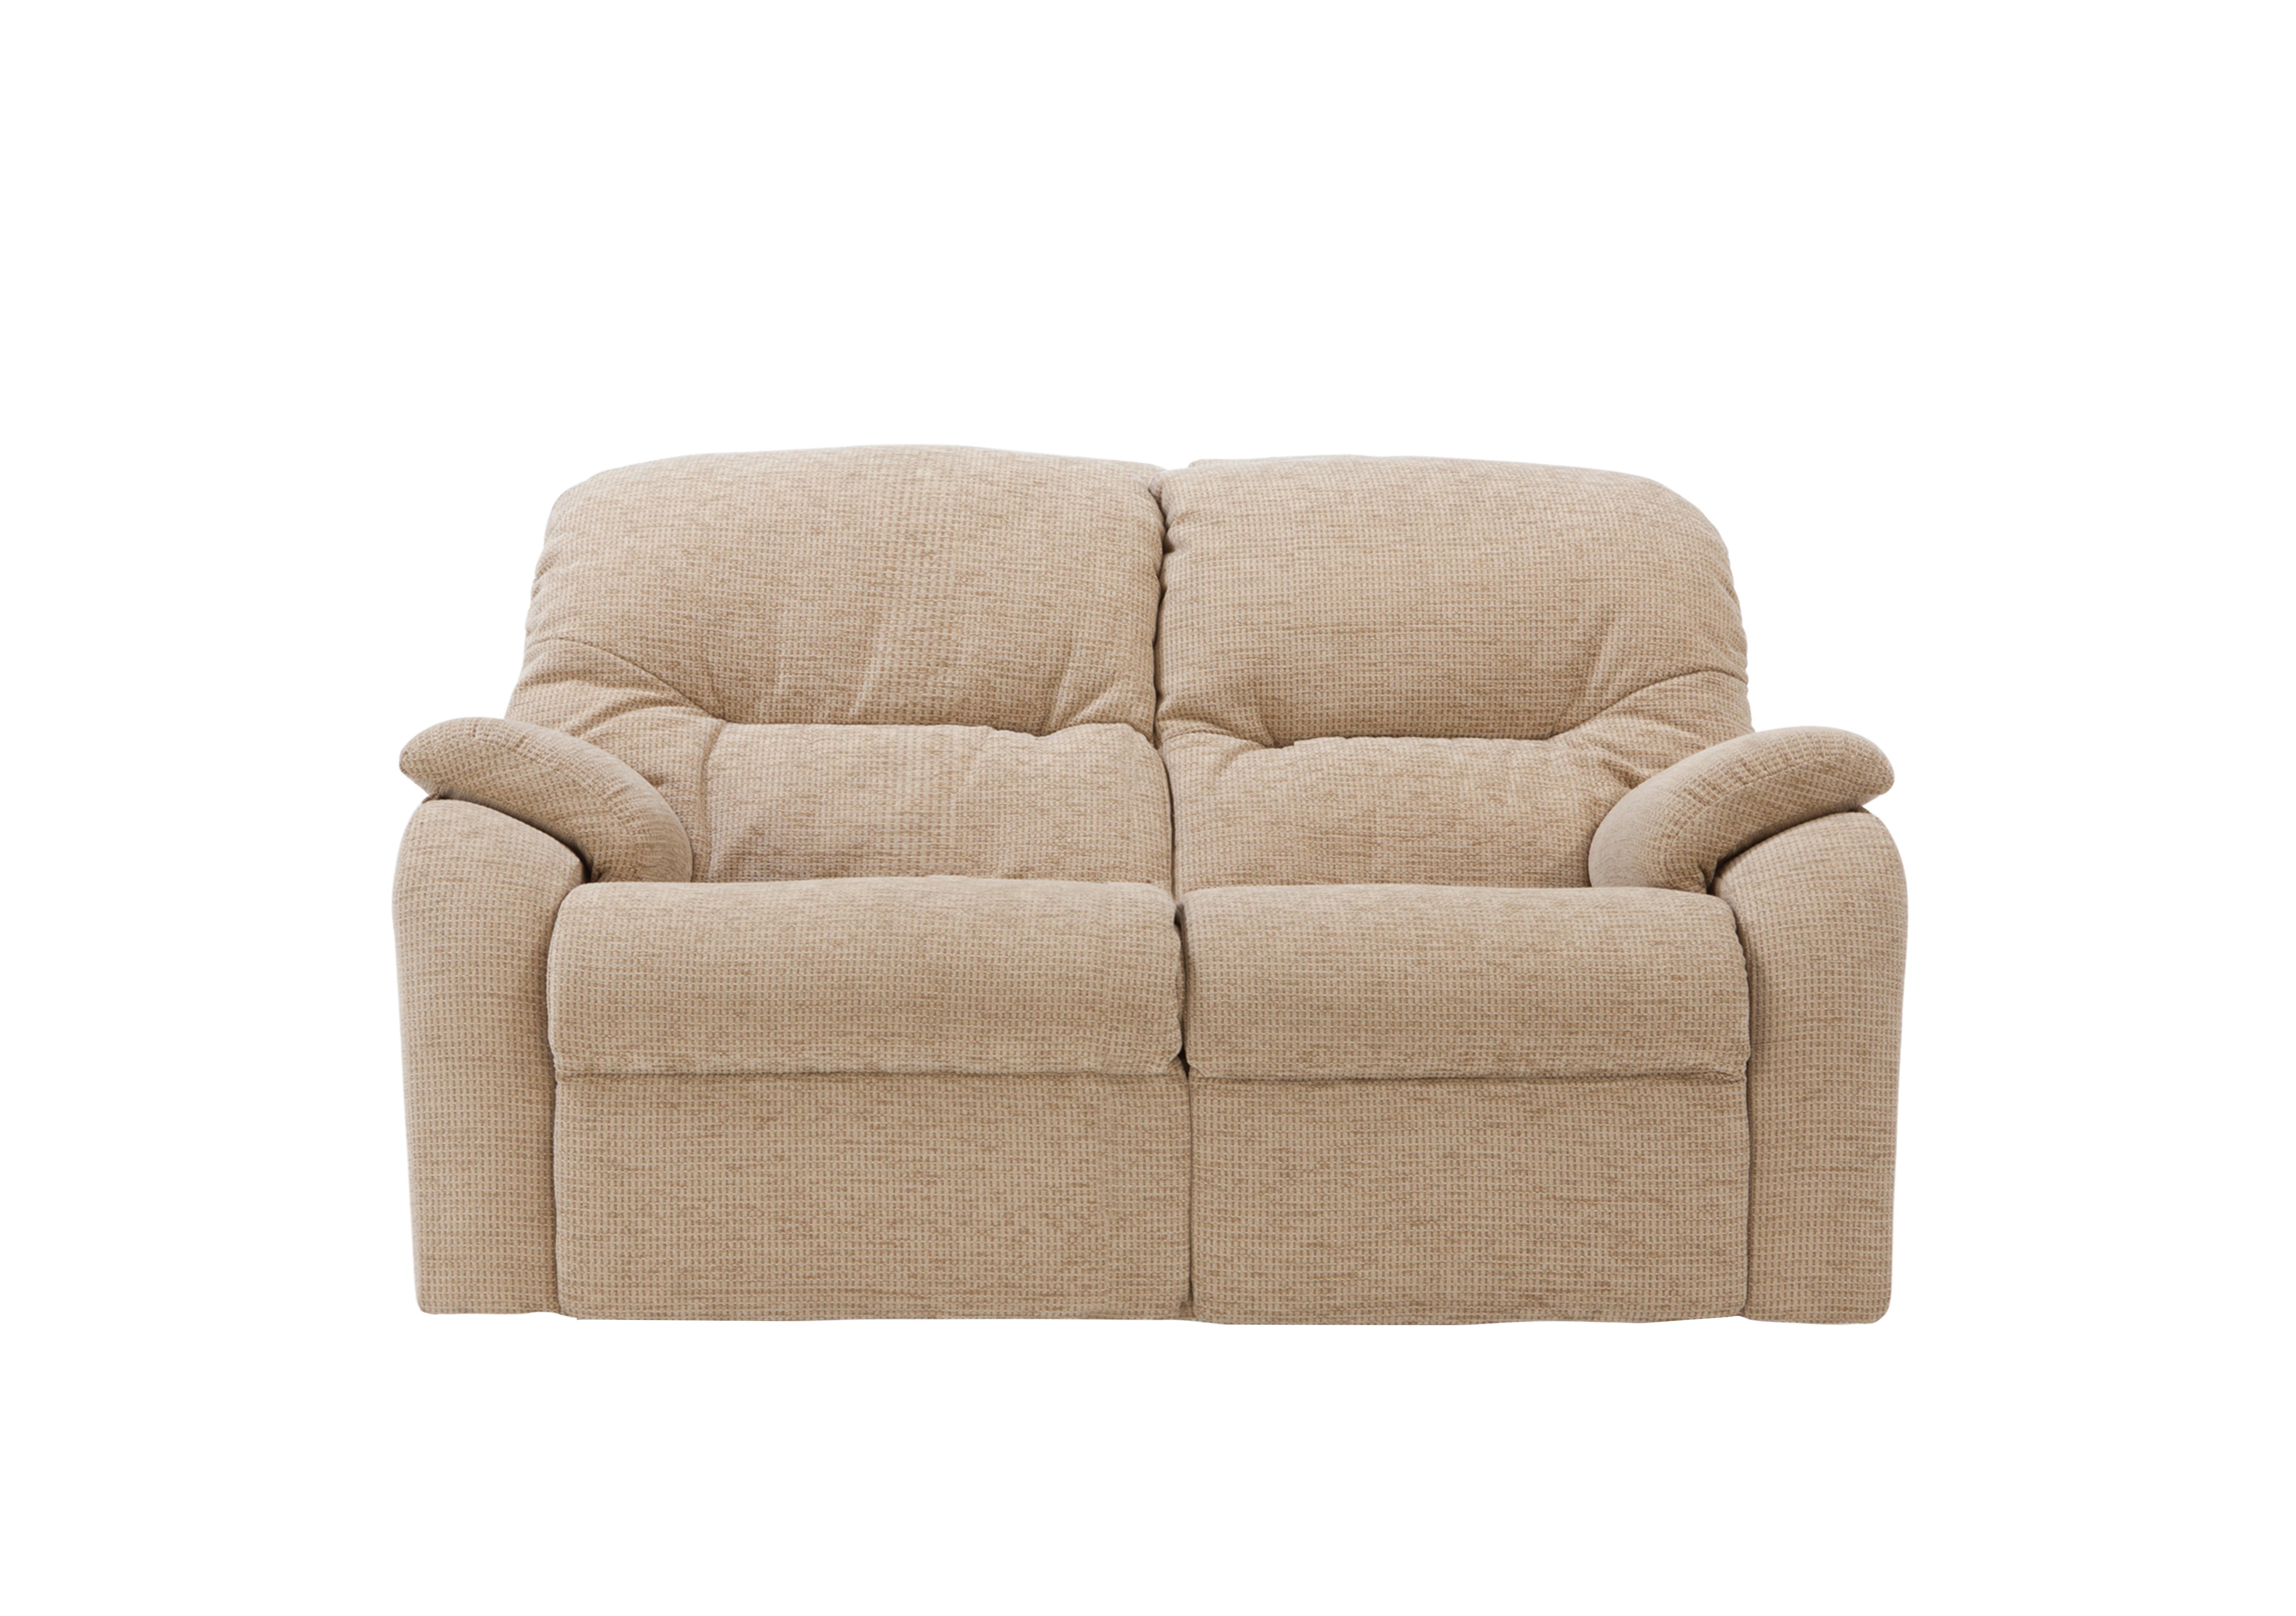 cream 2 seater fabric sofa | Brokeasshome.com